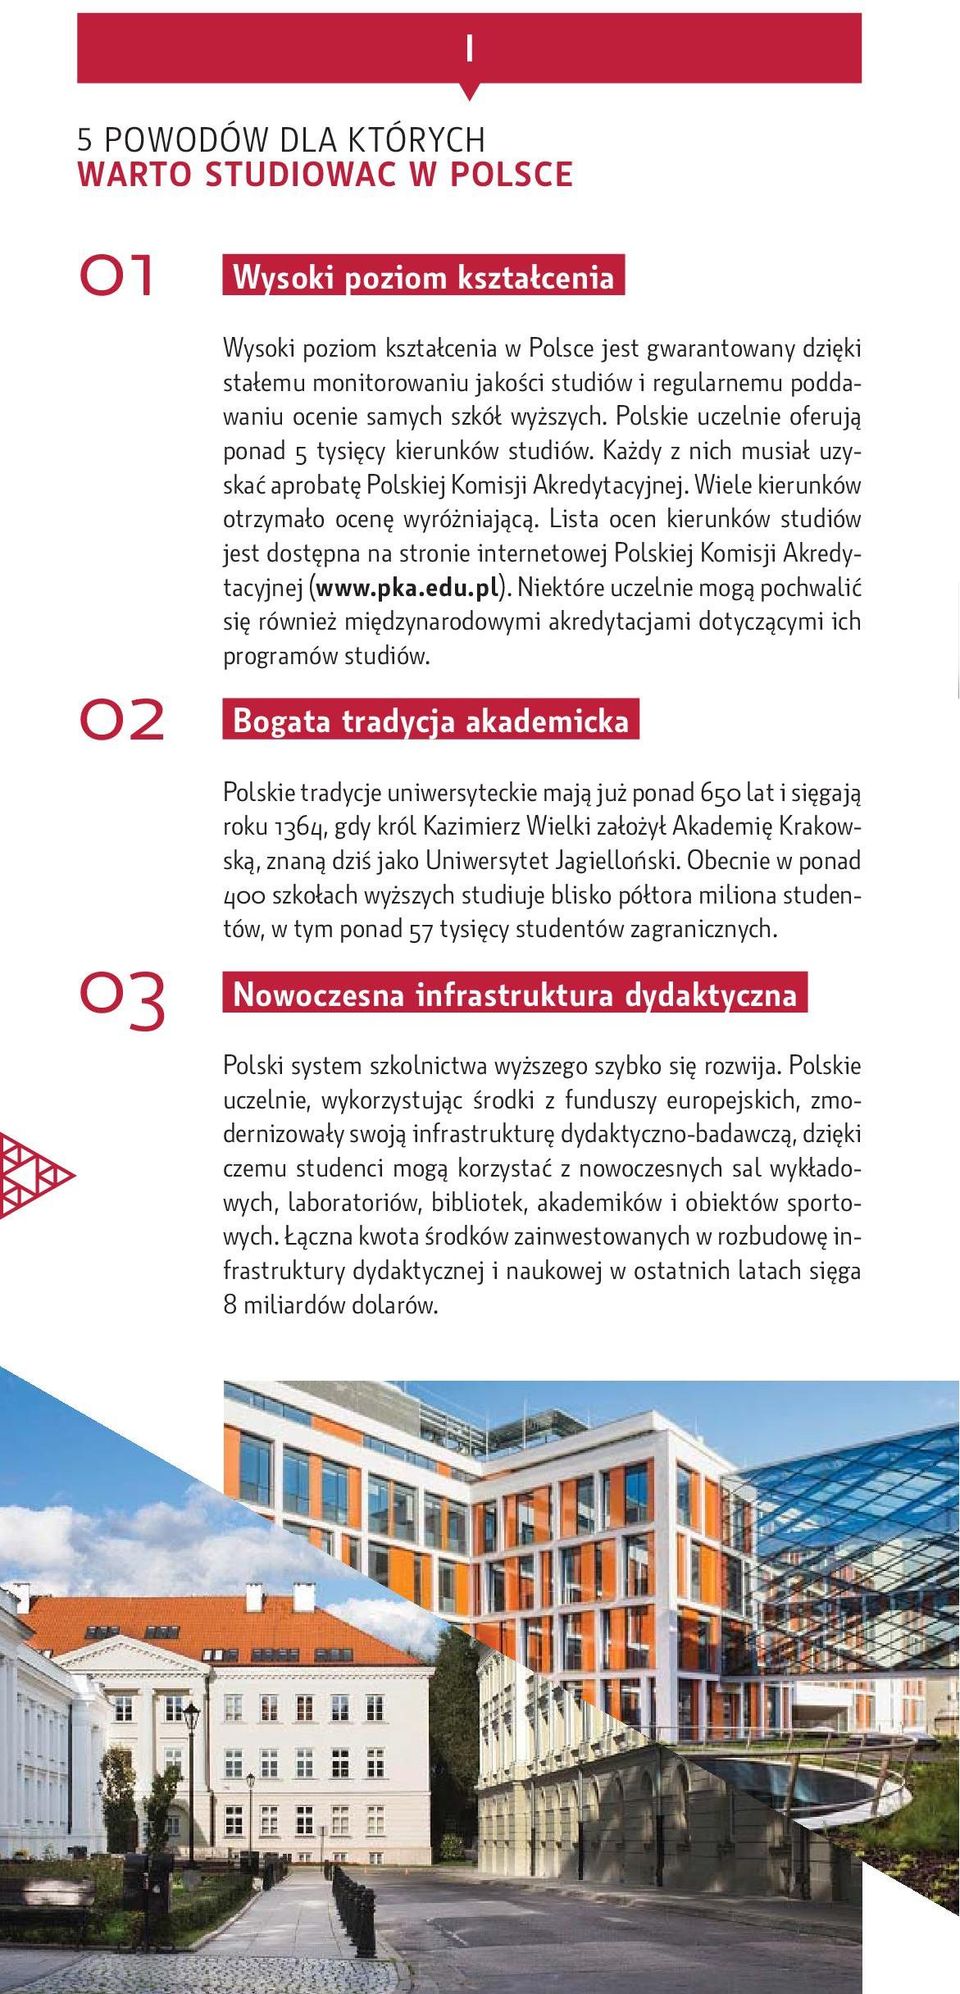 Wiele kierunków otrzymało ocenę wyróżniającą. Lista ocen kierunków studiów jest dostępna na stronie internetowej Polskiej Komisji Akredytacyjnej (www.pka.edu.pl).